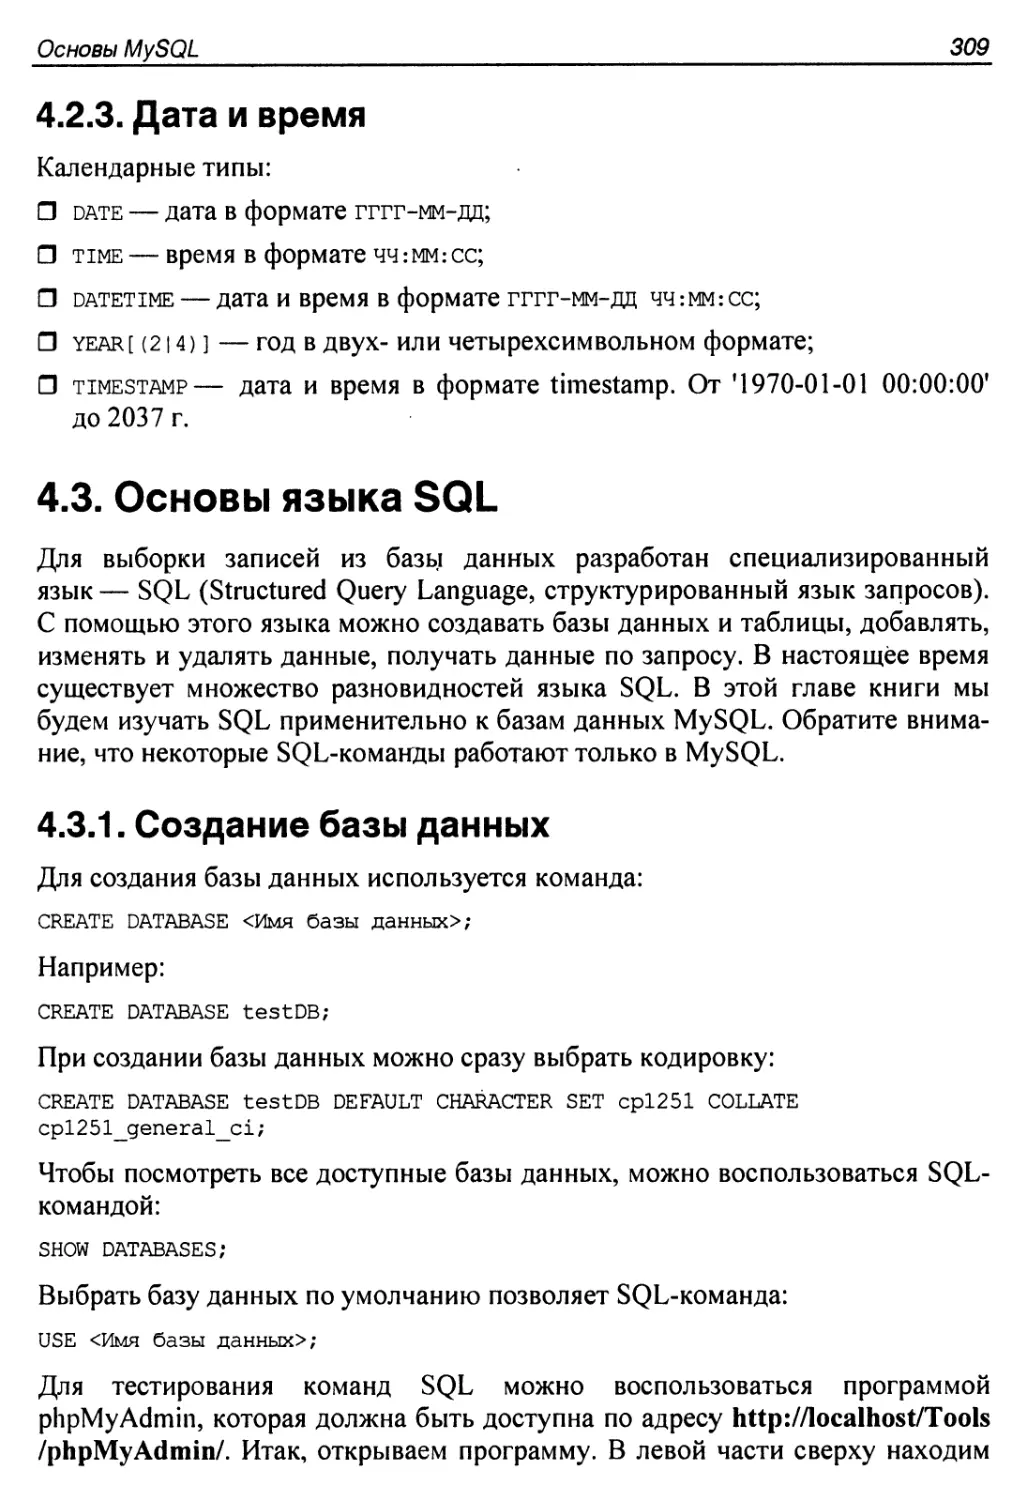 4.2.3. Дата и время ,
4.3. Основы языка SQL